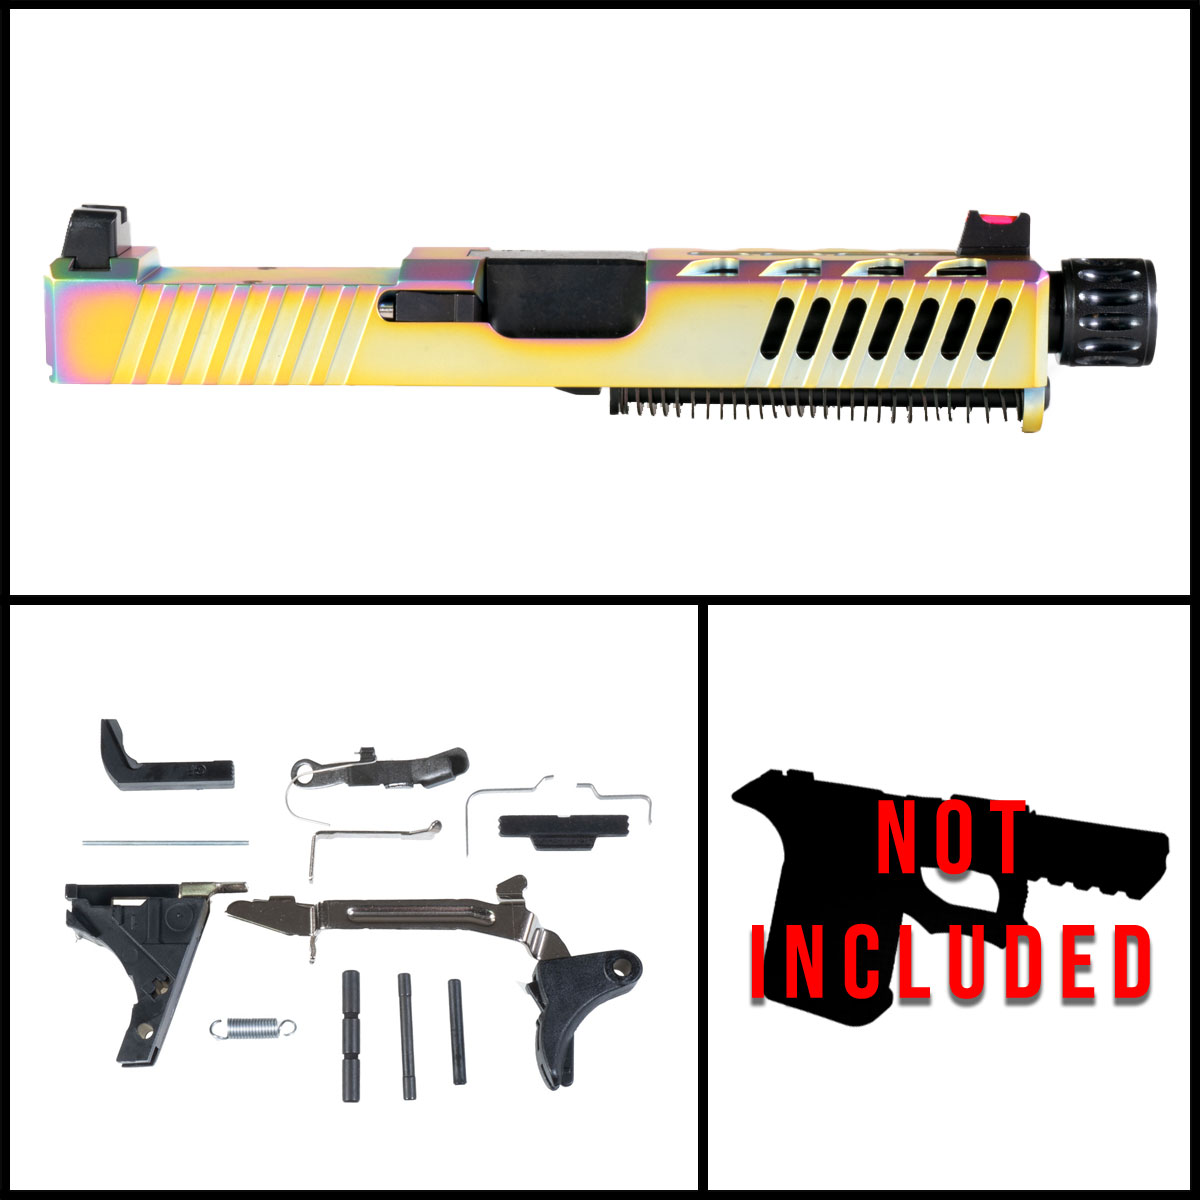 OTD 'Viva Velox' 9mm Full Pistol Build Kits (Everything Minus Frame) - Glock 19 Gen 1-2 Compatible